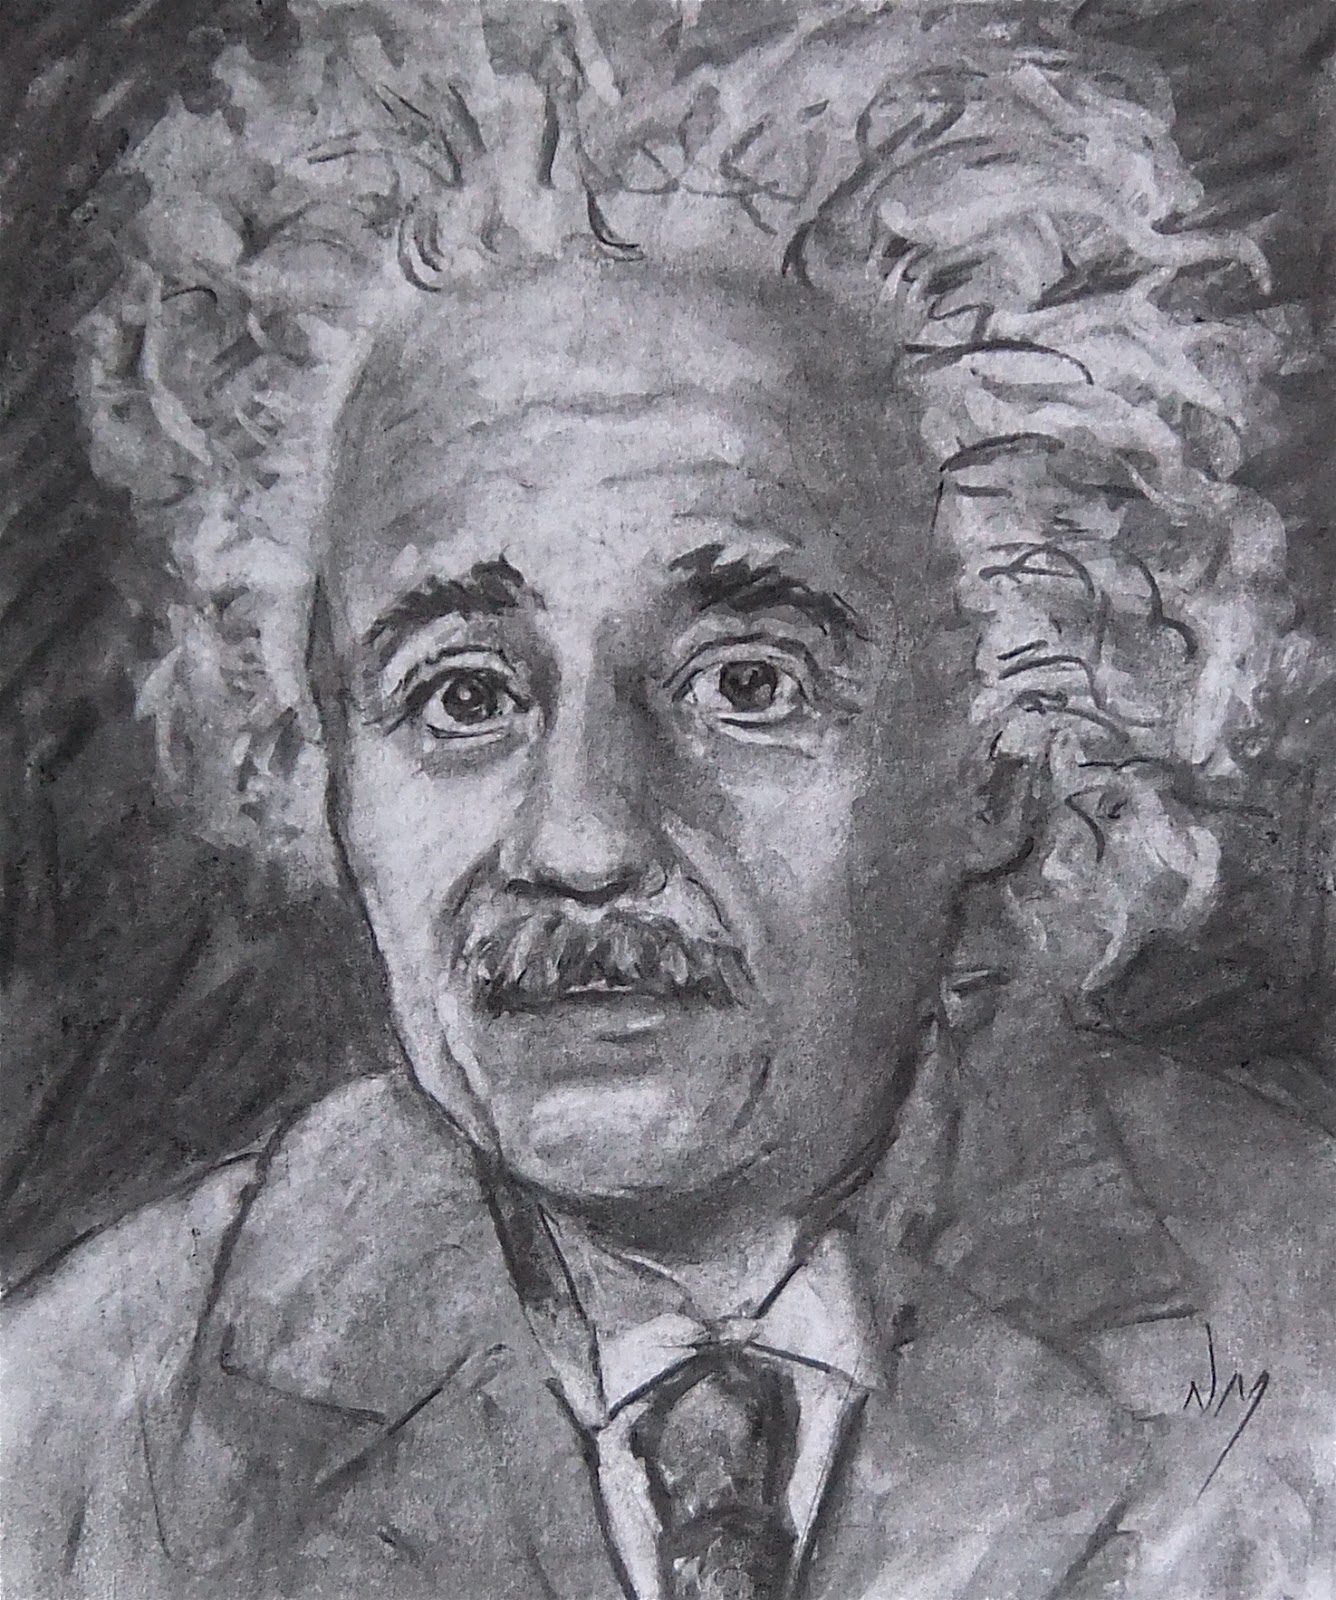 Einstein+e=mc2+charcoal+portrait+drawing+MacPhail.jpg